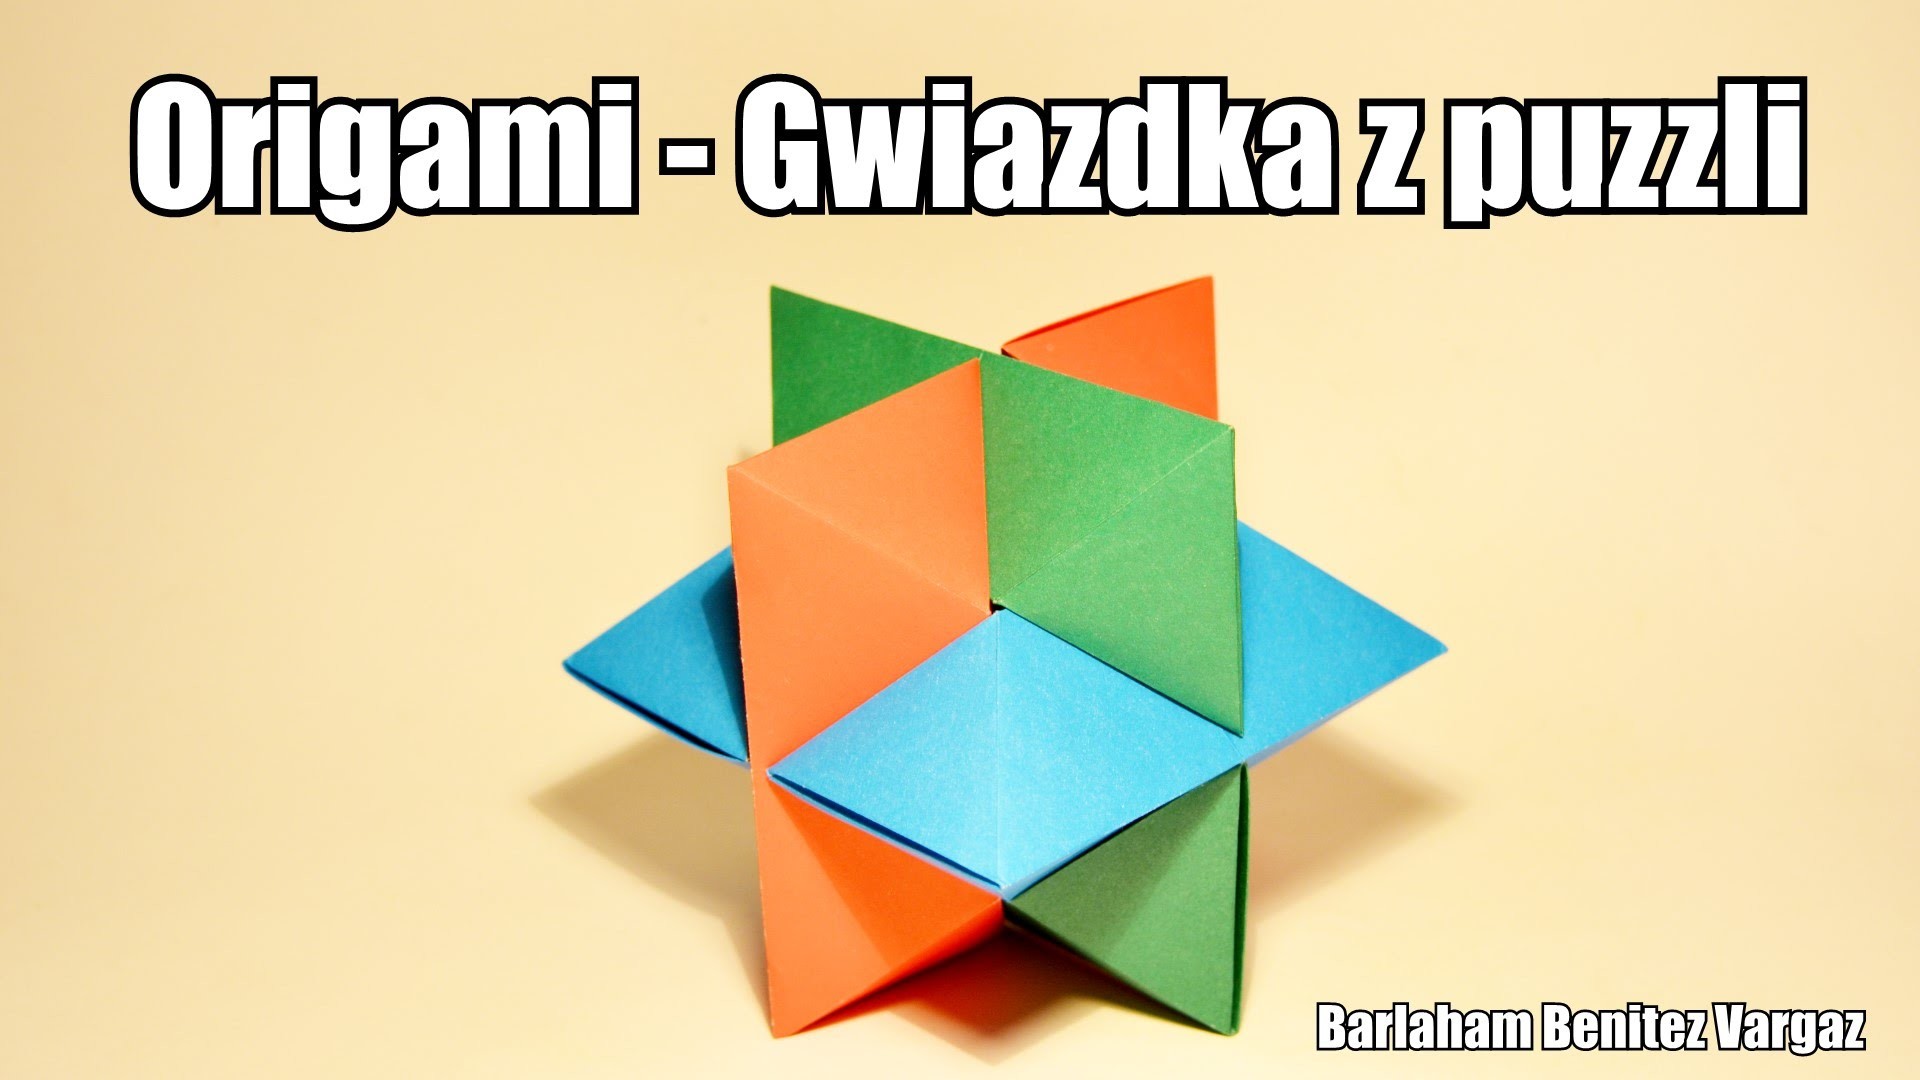 Origami - Gwiazdka z puzzli